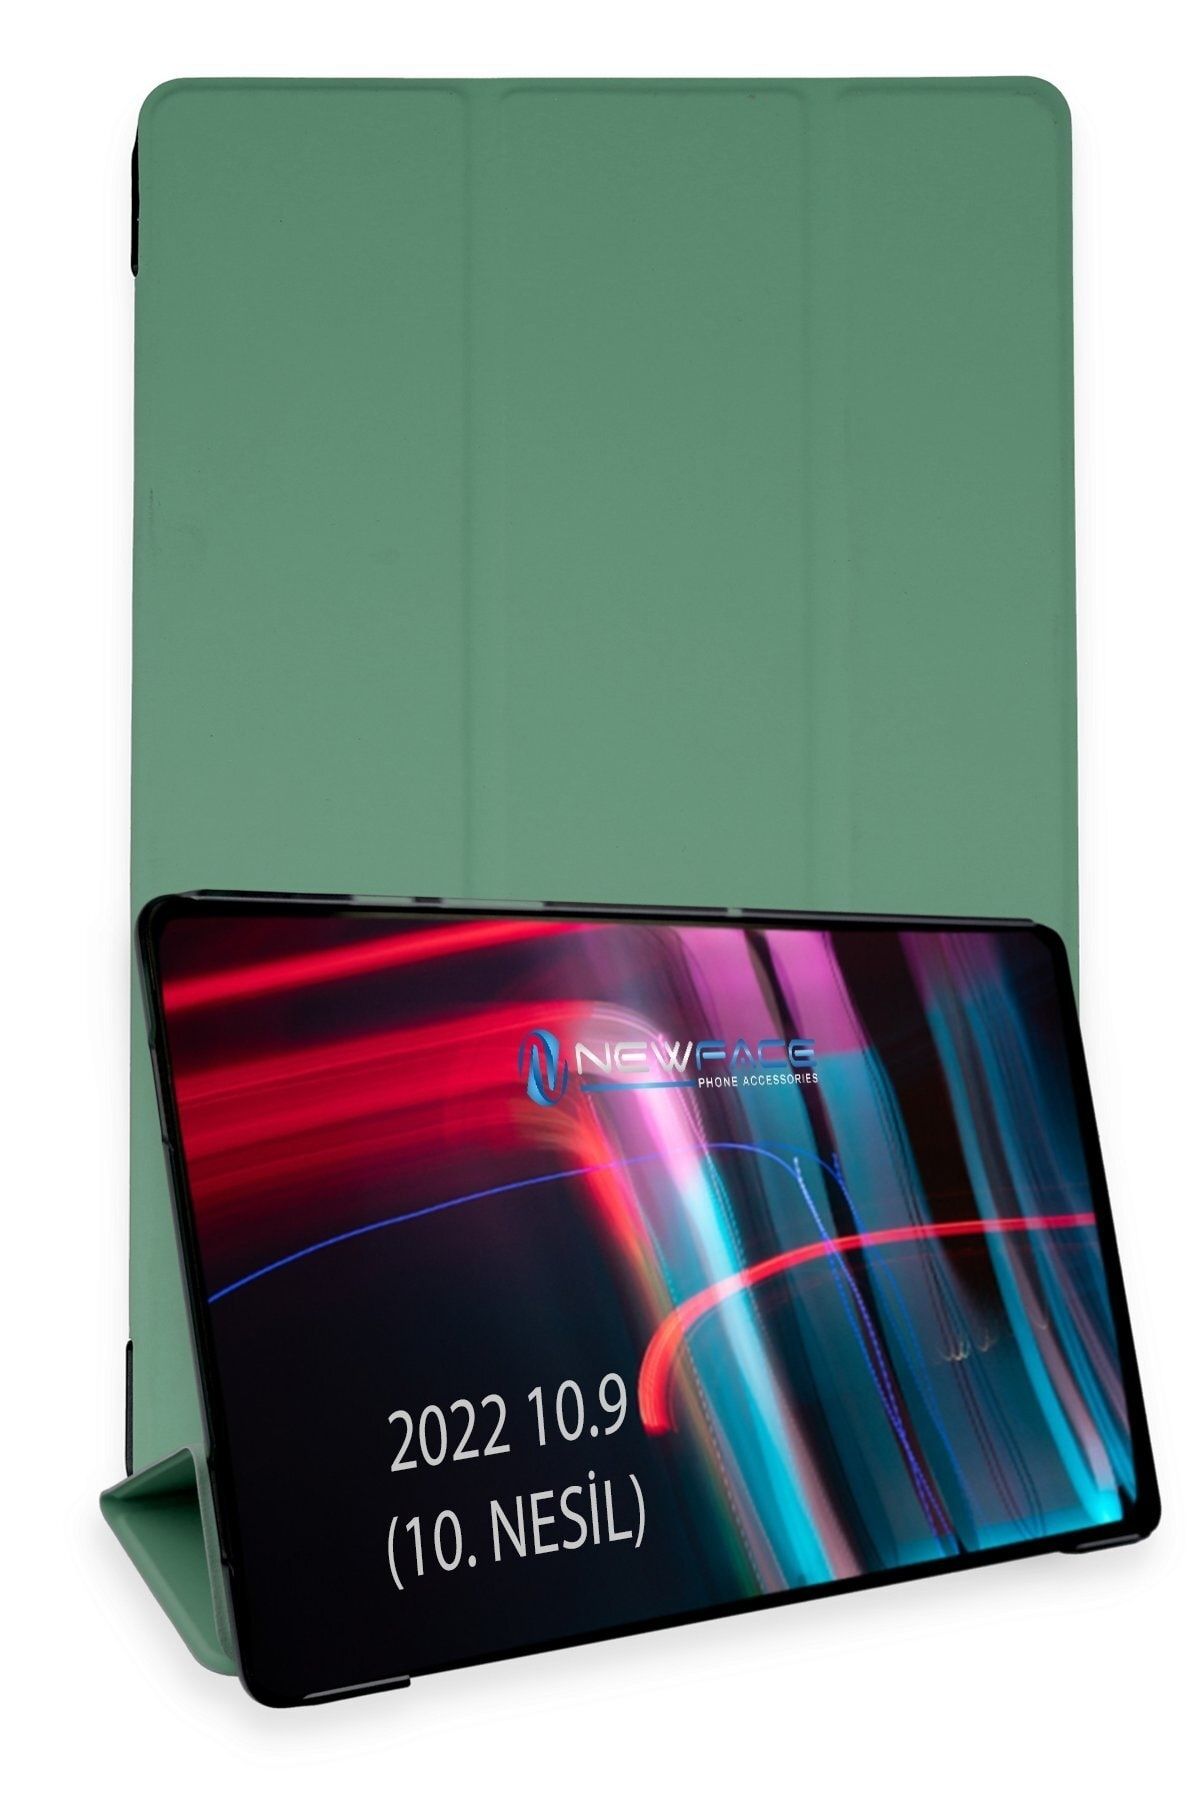 Bilişim Aksesuar Ipad 2022 10.9 (10.nesil) Kılıf Tablet Smart Cover Kılıf - Koyu Yeşil